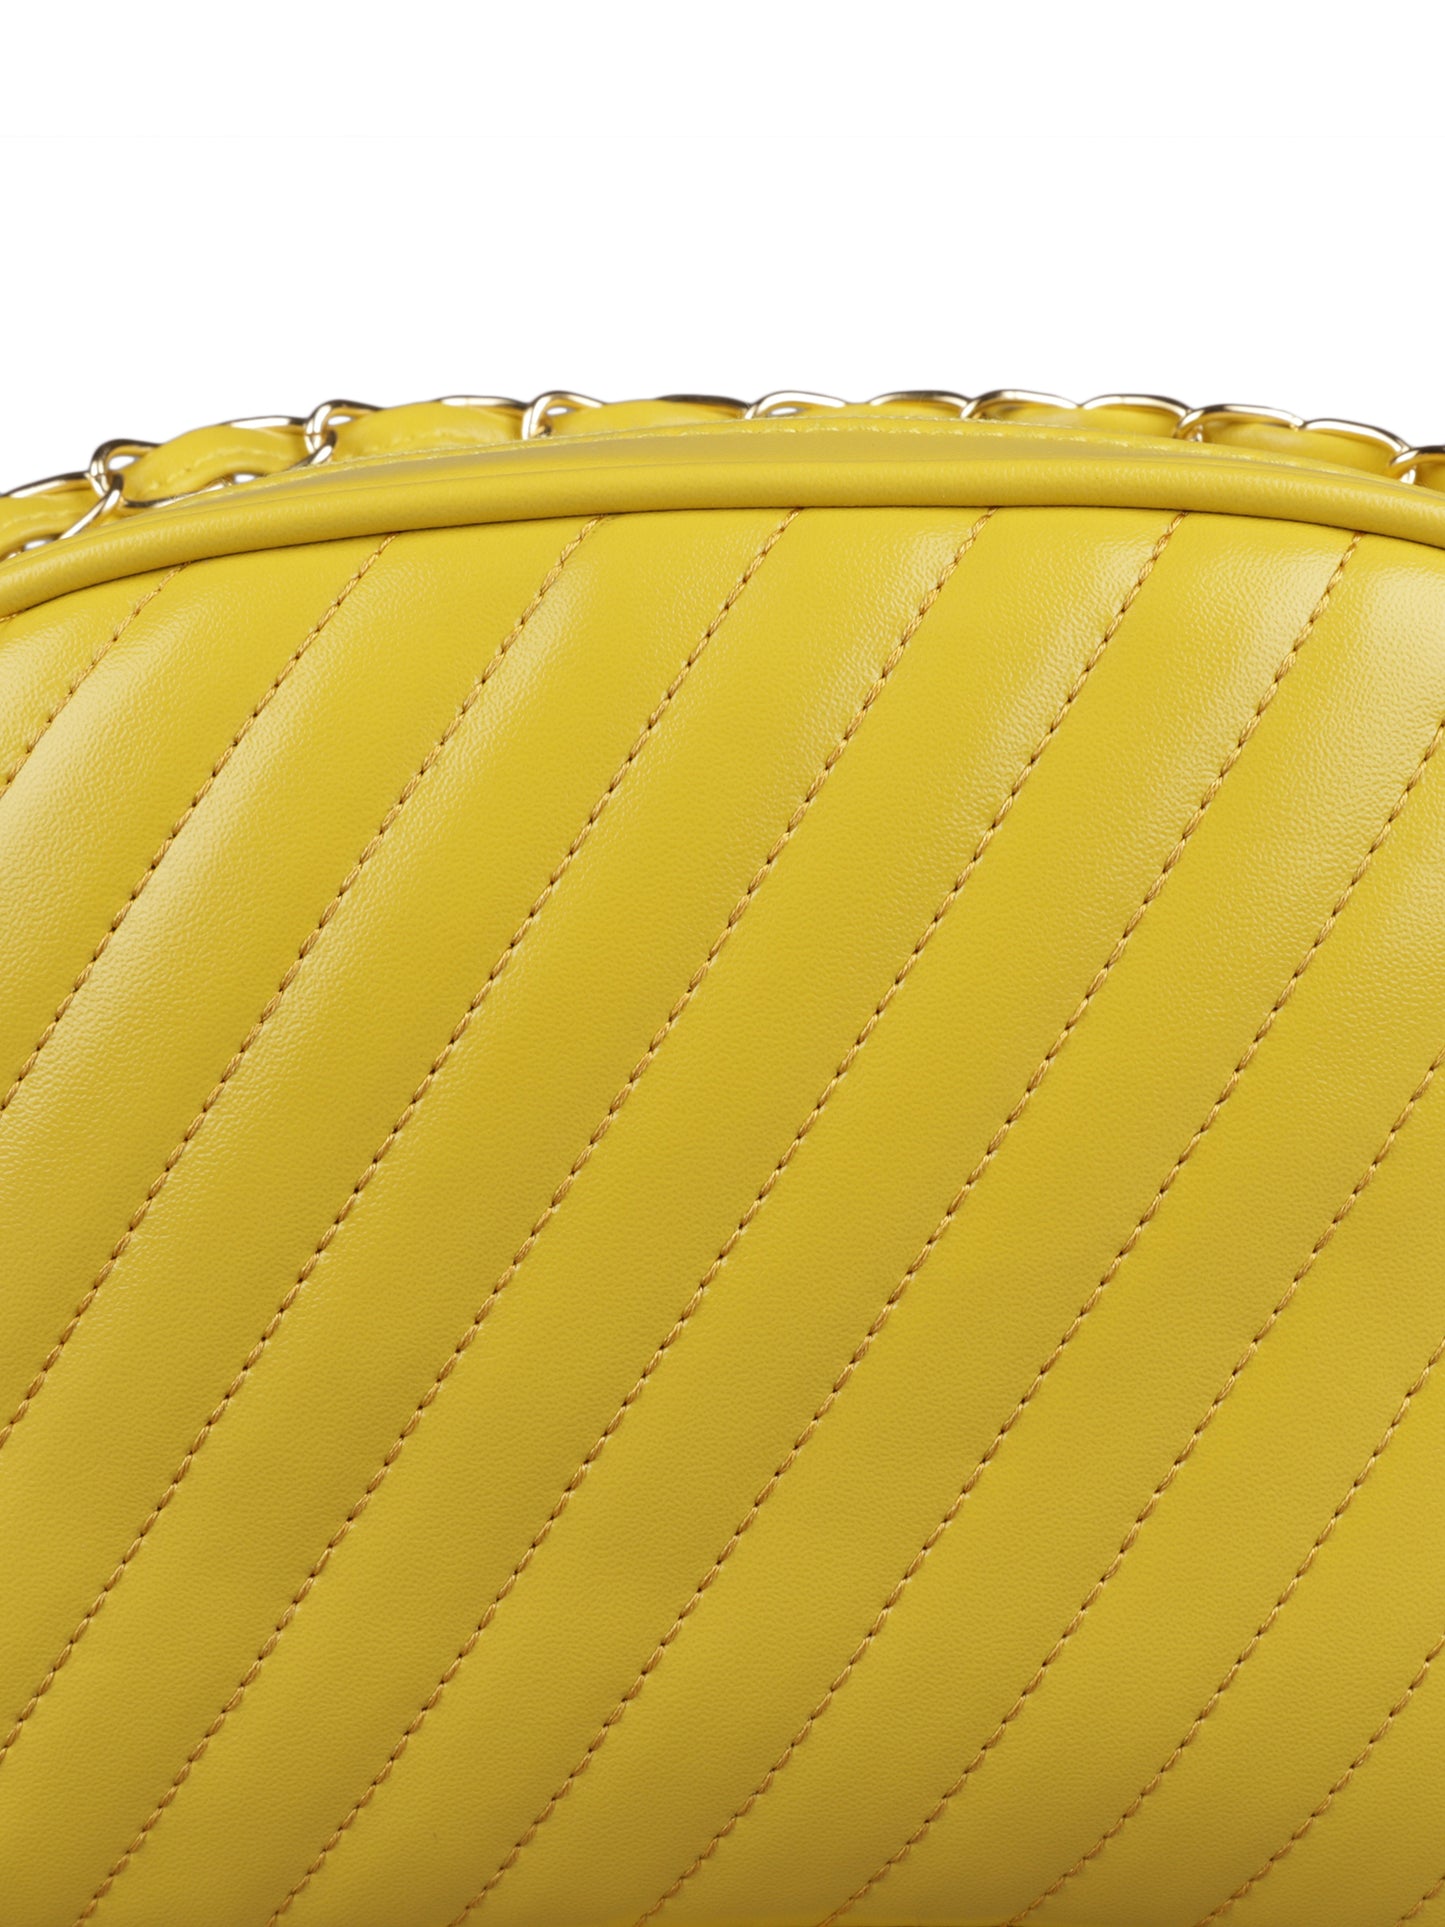 MINI WESST Women's Yellow Handbags(MWHB038YL)